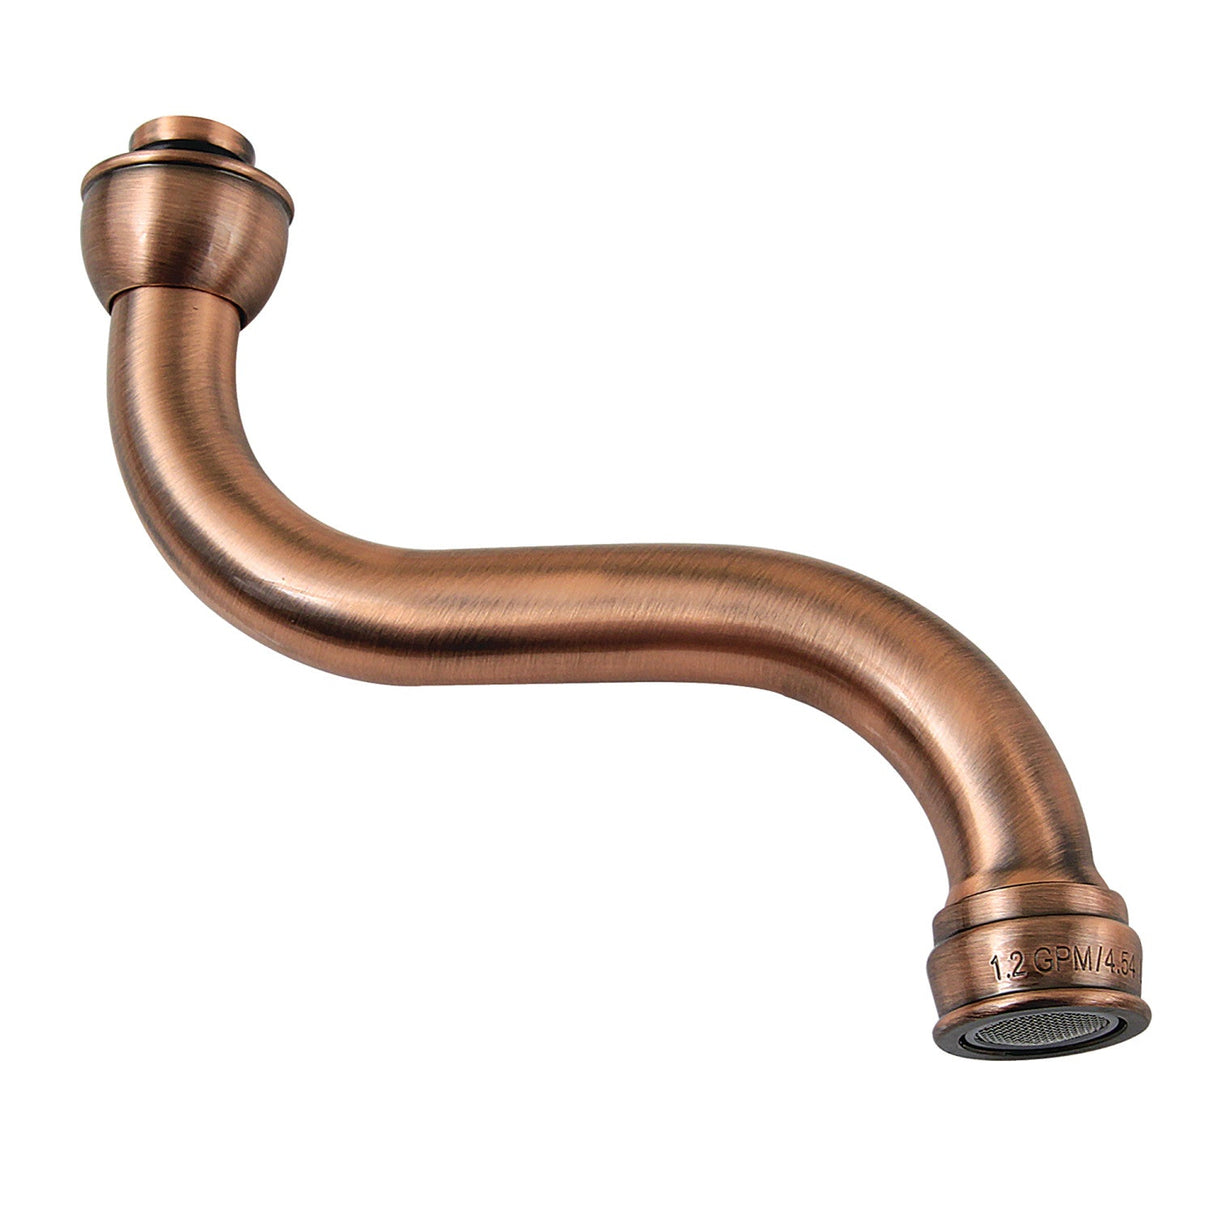 KSP211AC 1.2 GPM Brass Faucet Spout, Antique Copper